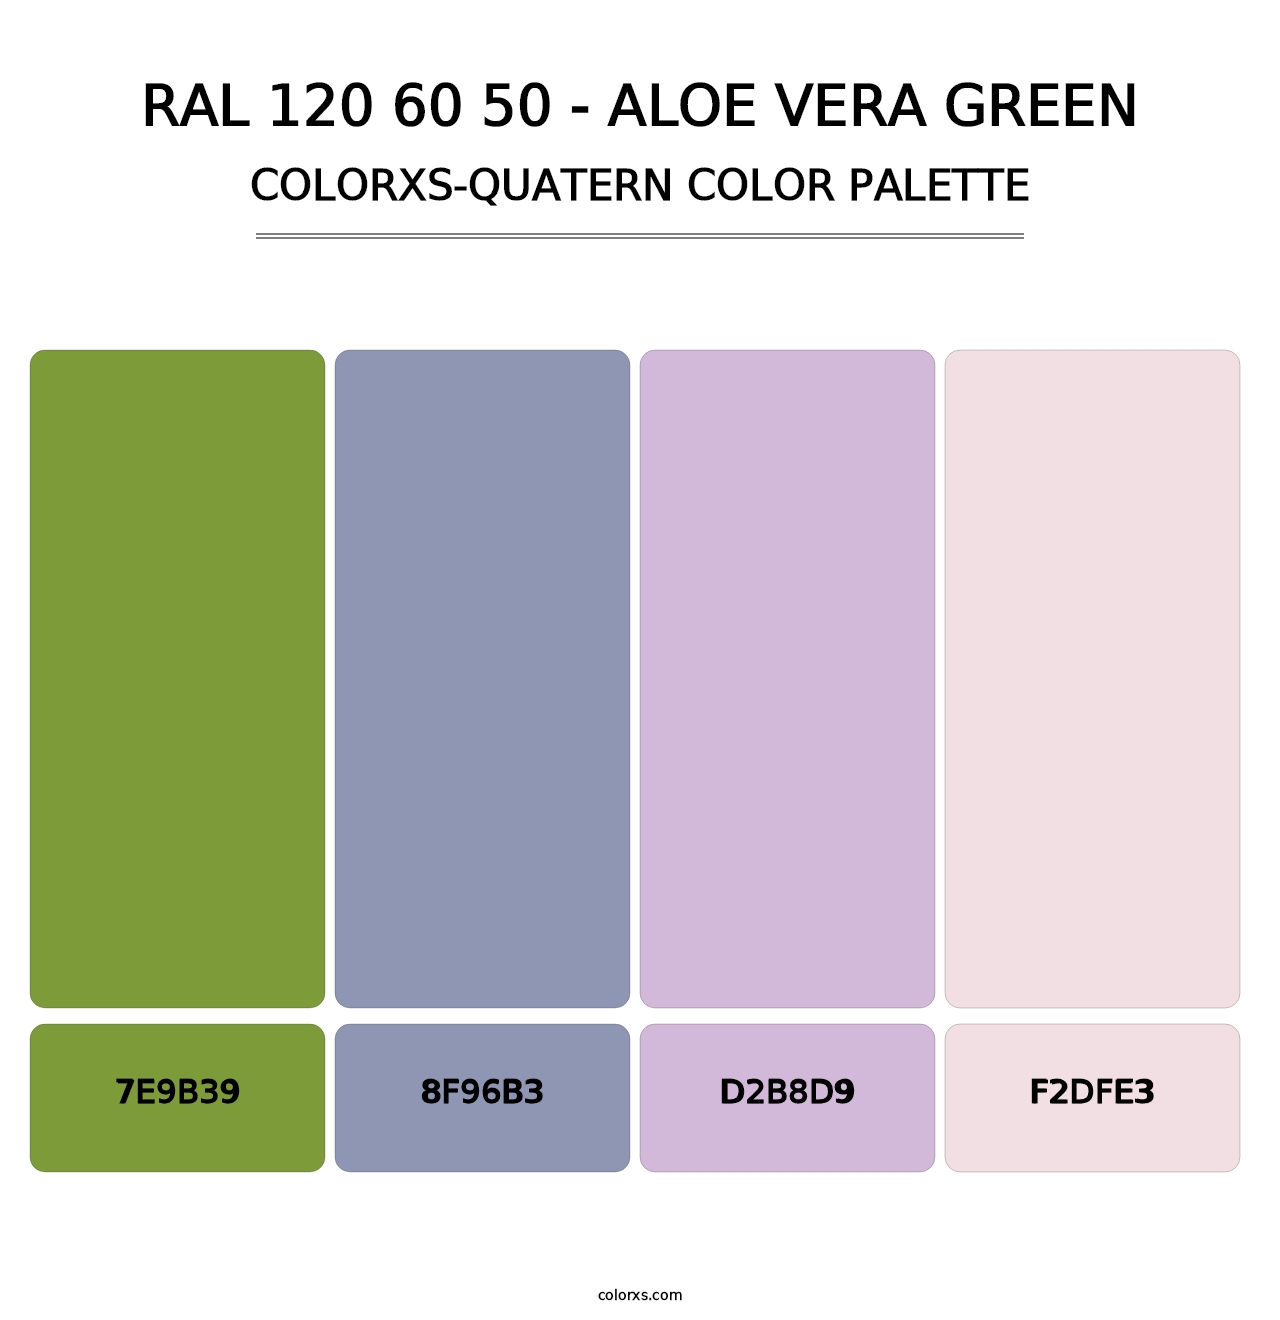 RAL 120 60 50 - Aloe Vera Green - Colorxs Quatern Palette